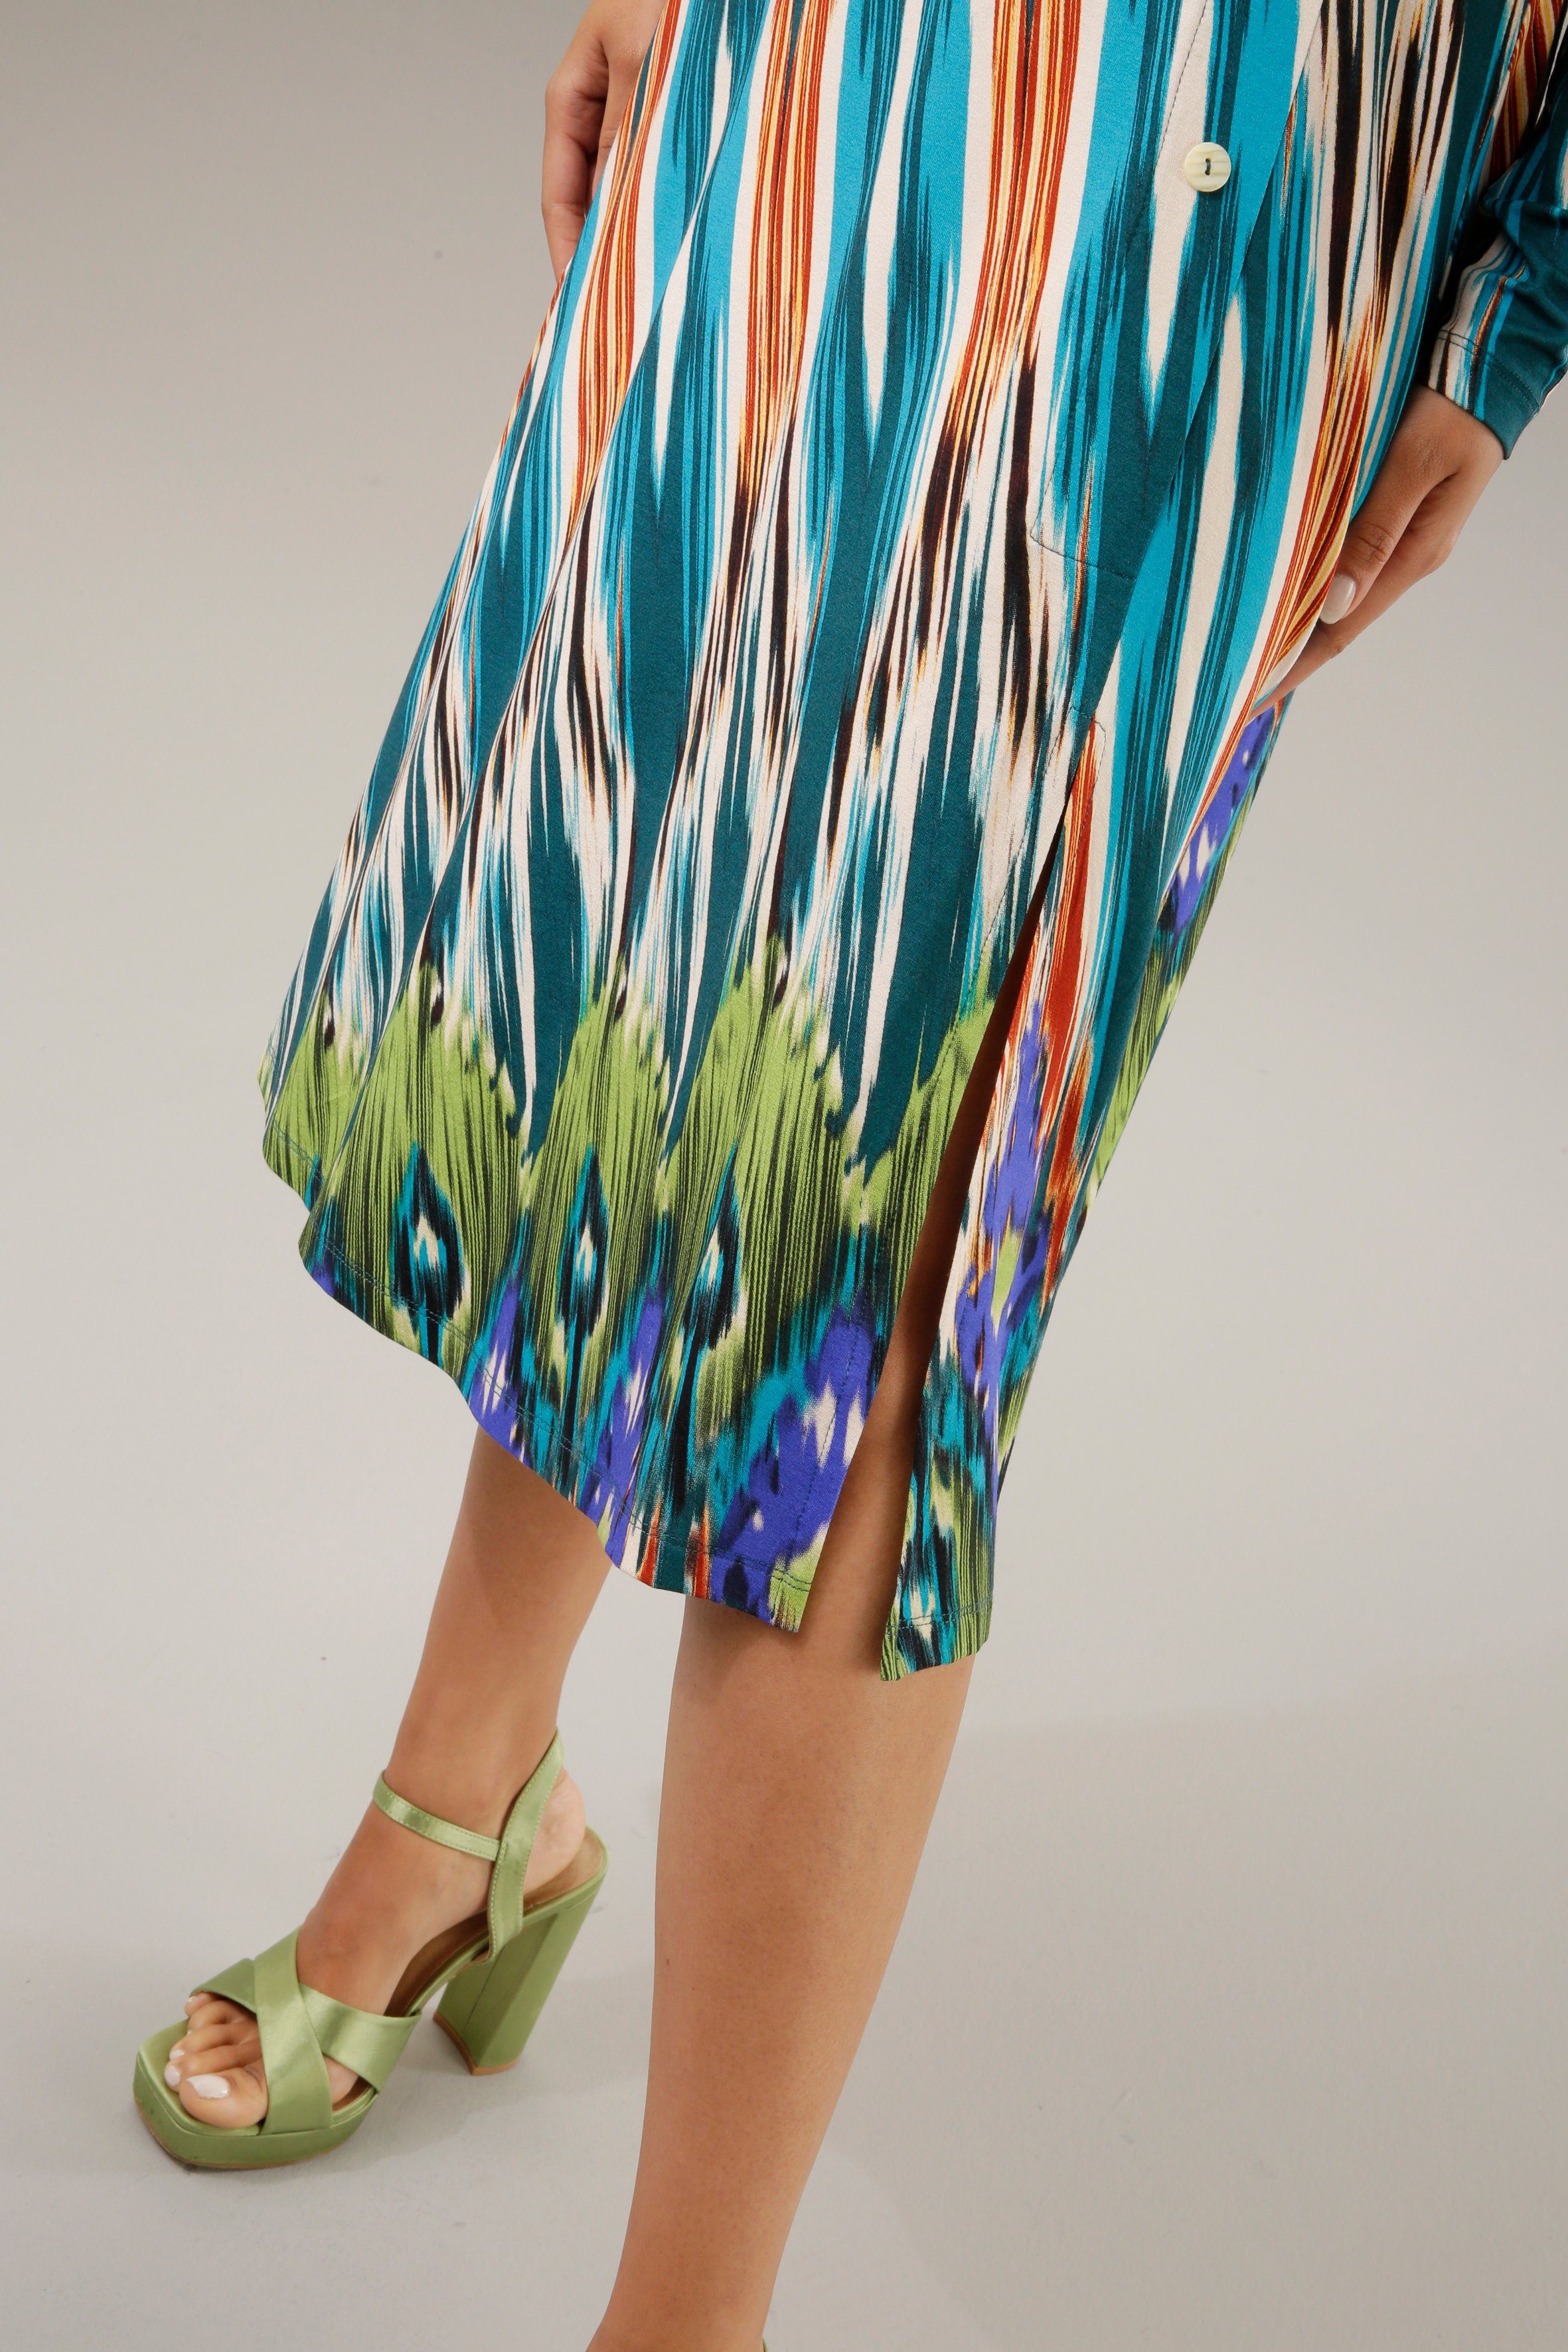 Aniston CASUAL Jerseykleid mit farbenfrohem Ethno-Druck Unikat ein jedes - Teil